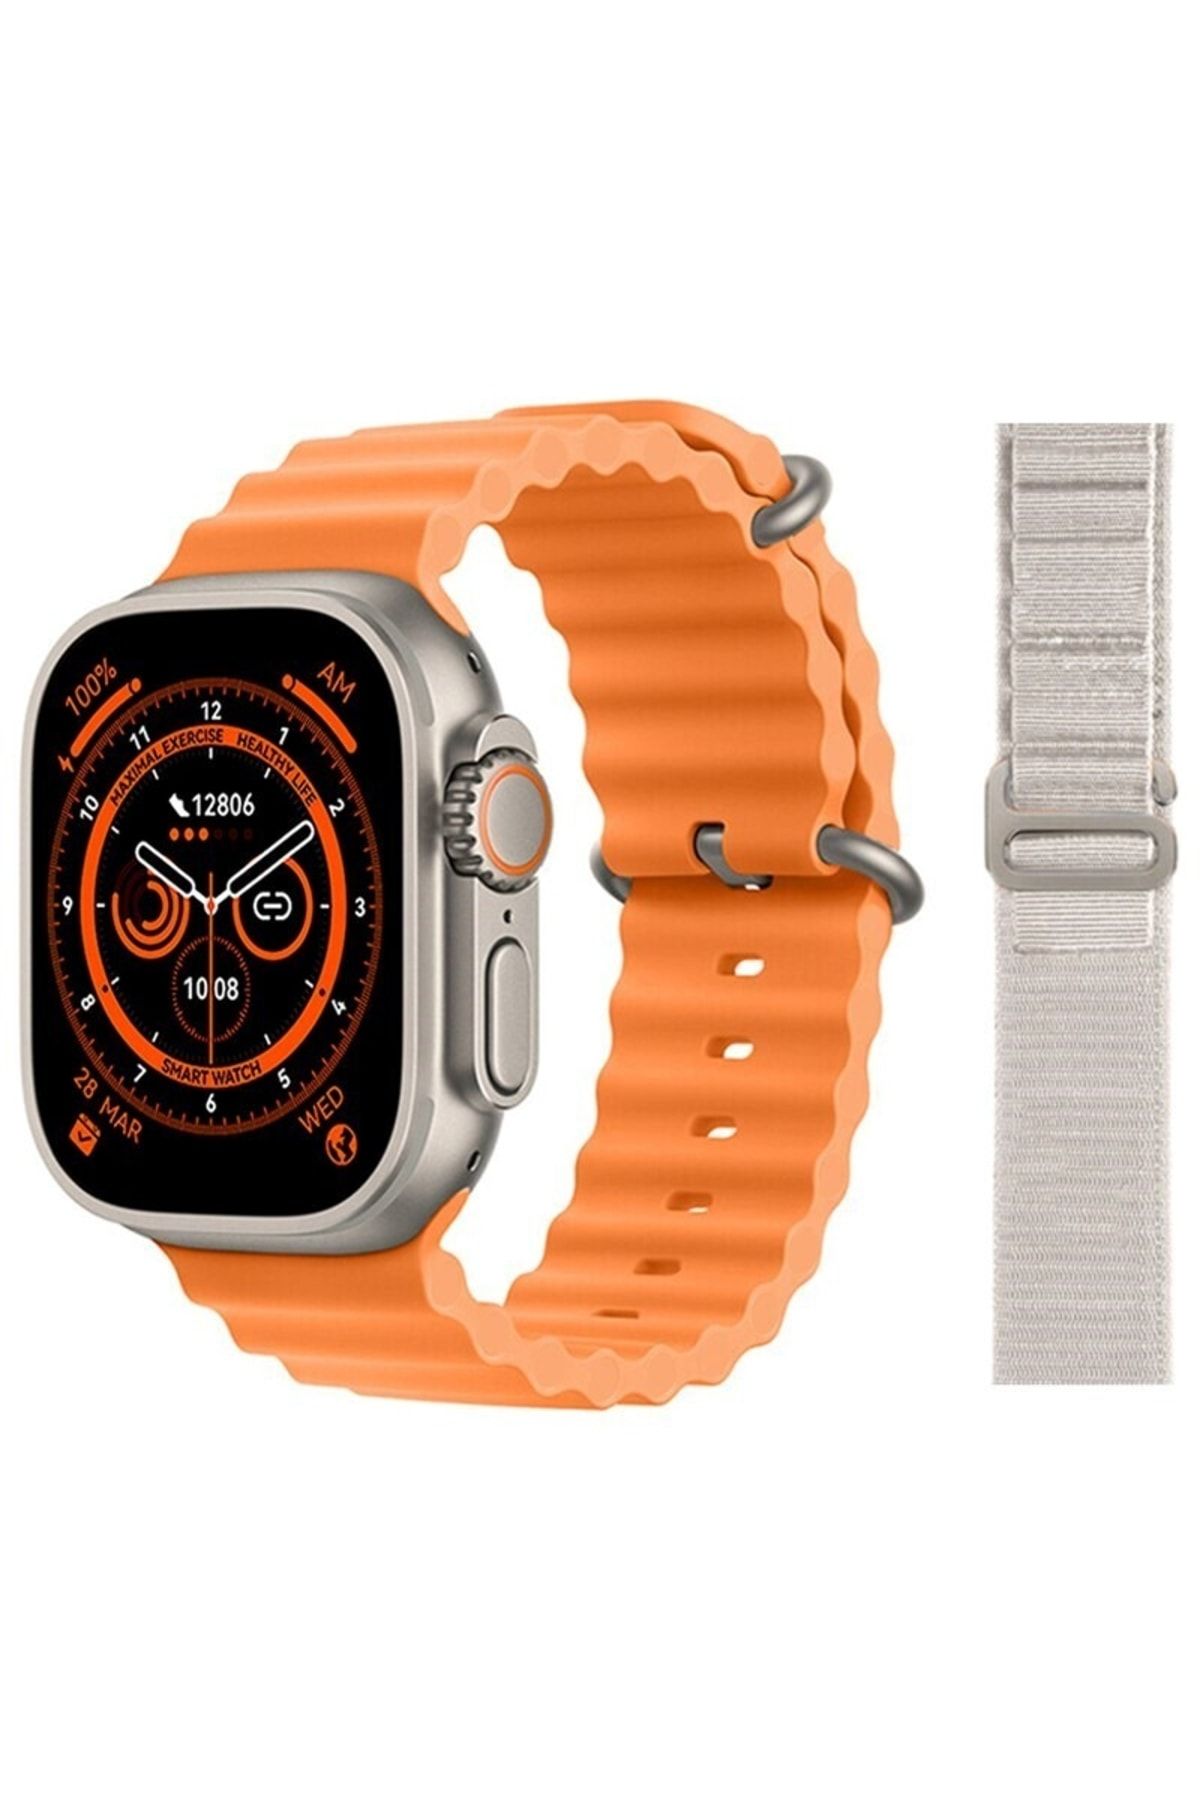 pazariz Gs8 Watch 8 Ultra Akıllı Saat Turuncu Türkçe Watch 2.02 Inc Beyaz Bez Kordon Hediye